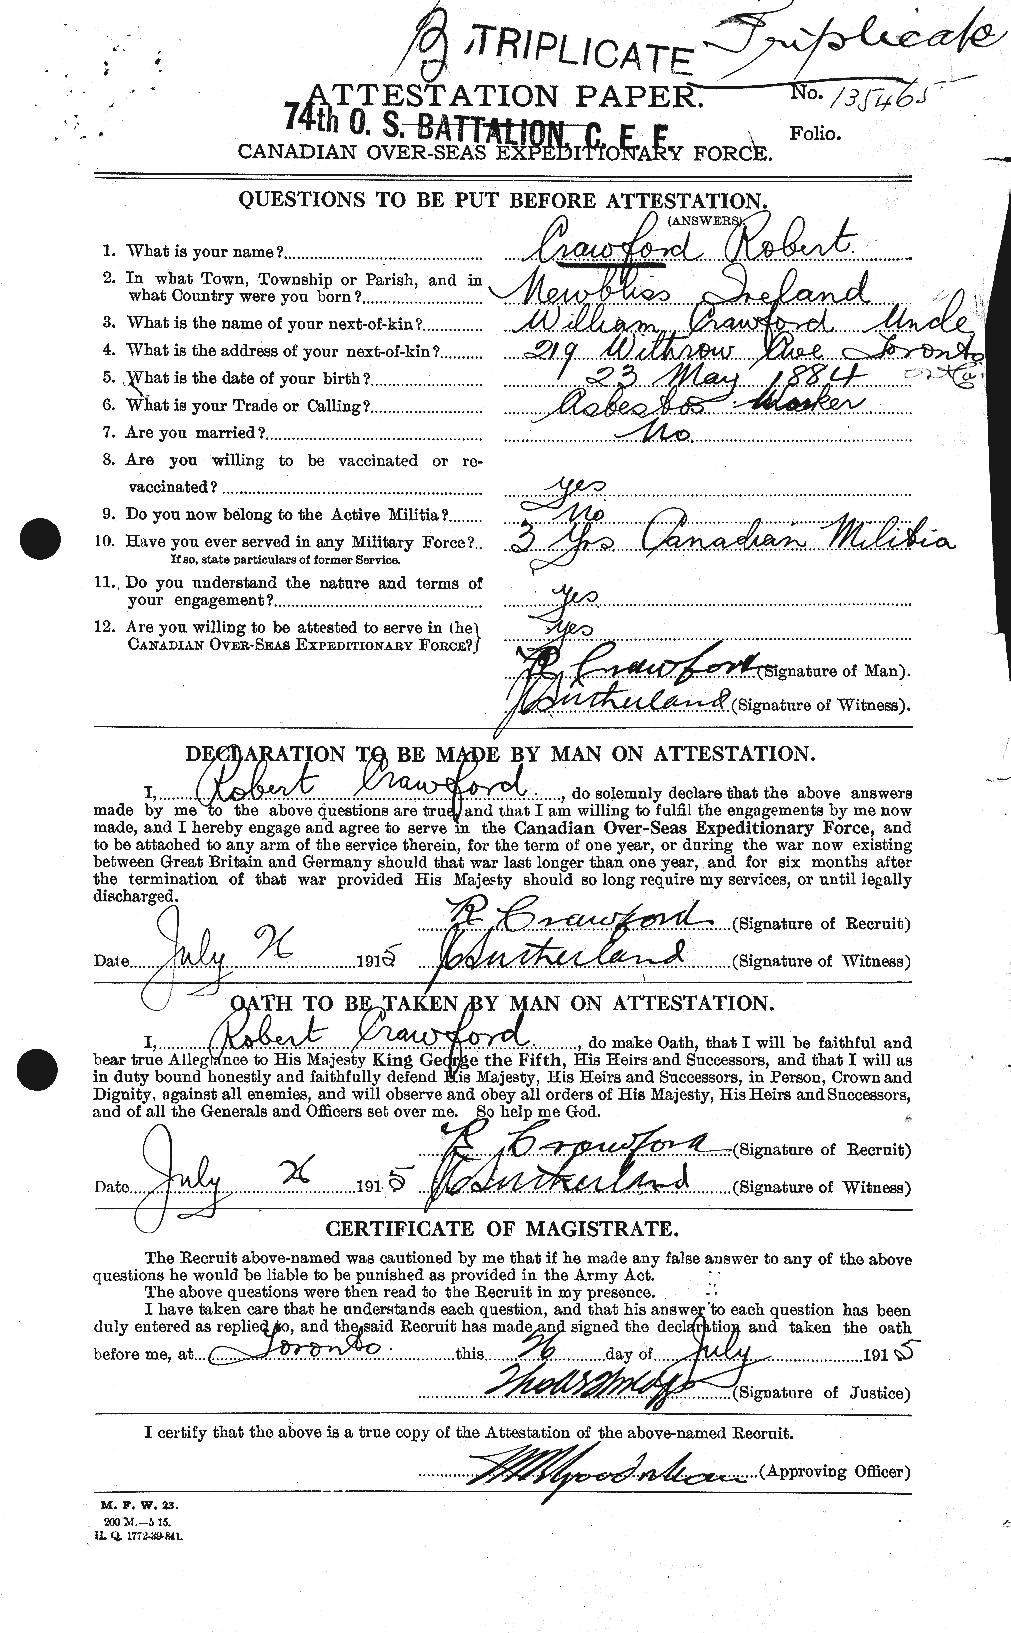 Dossiers du Personnel de la Première Guerre mondiale - CEC 061635a